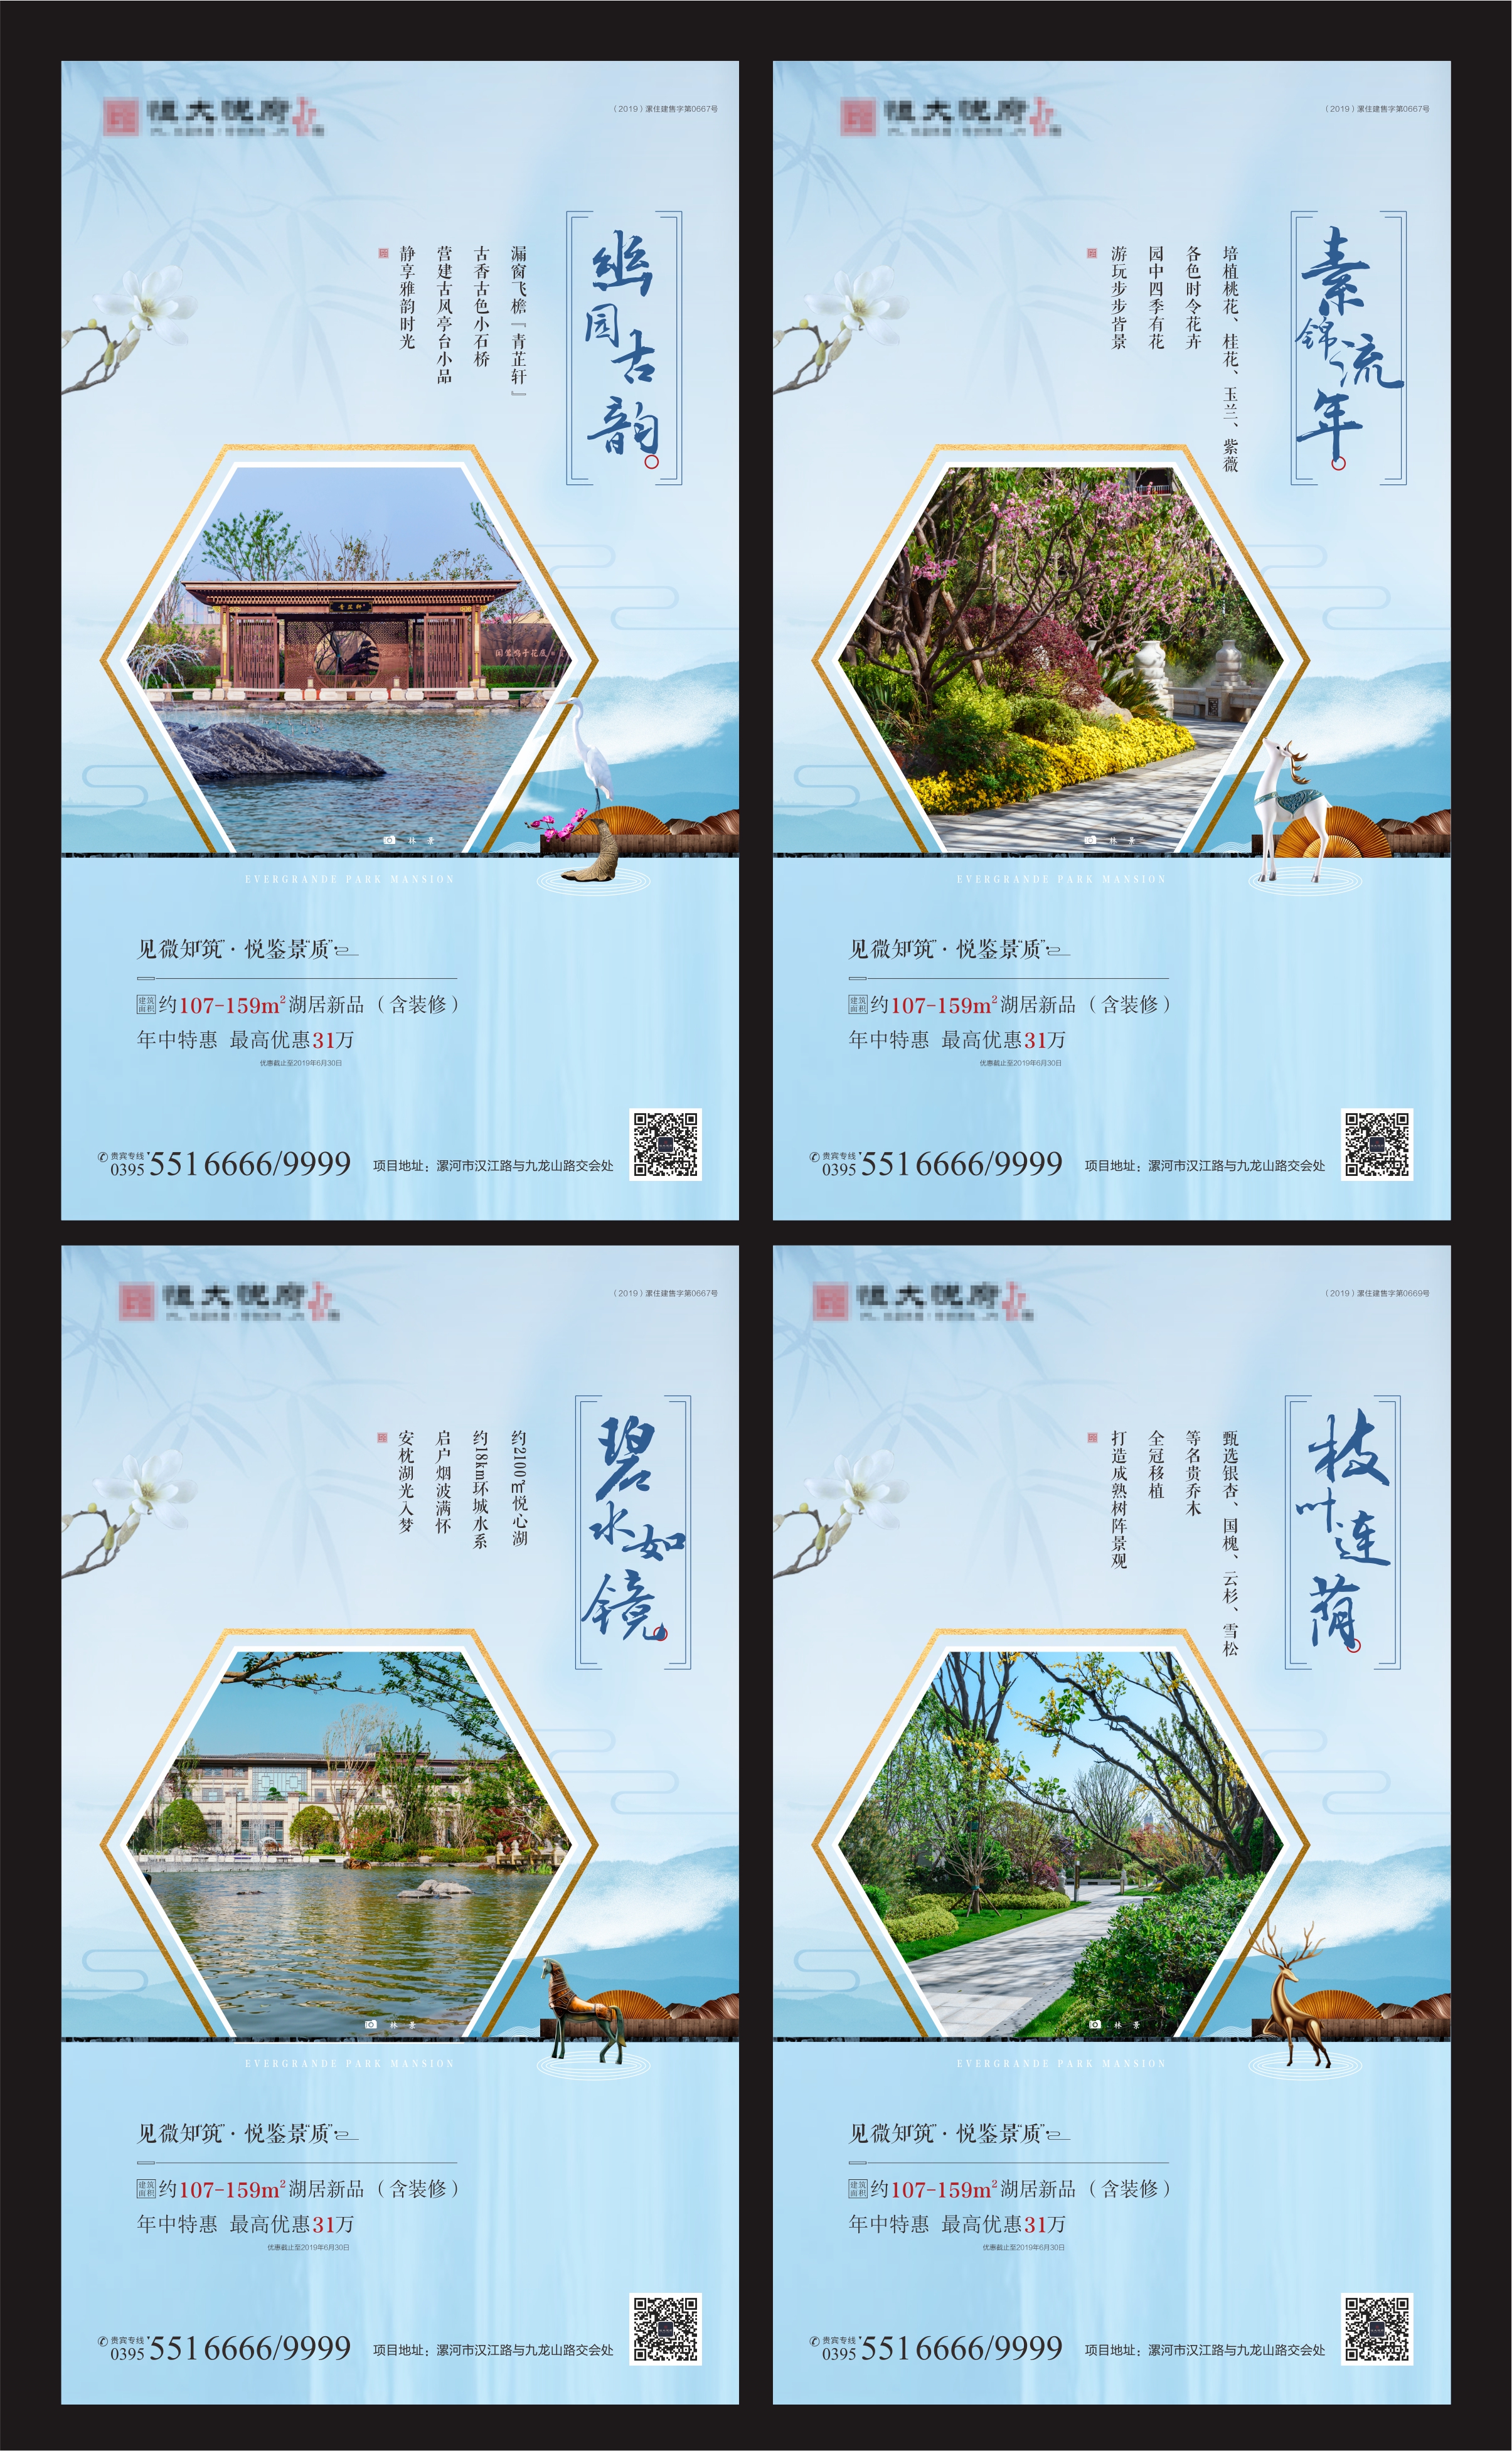 地产景观园林价值点系列海报ai广告设计素材海报模板免费下载